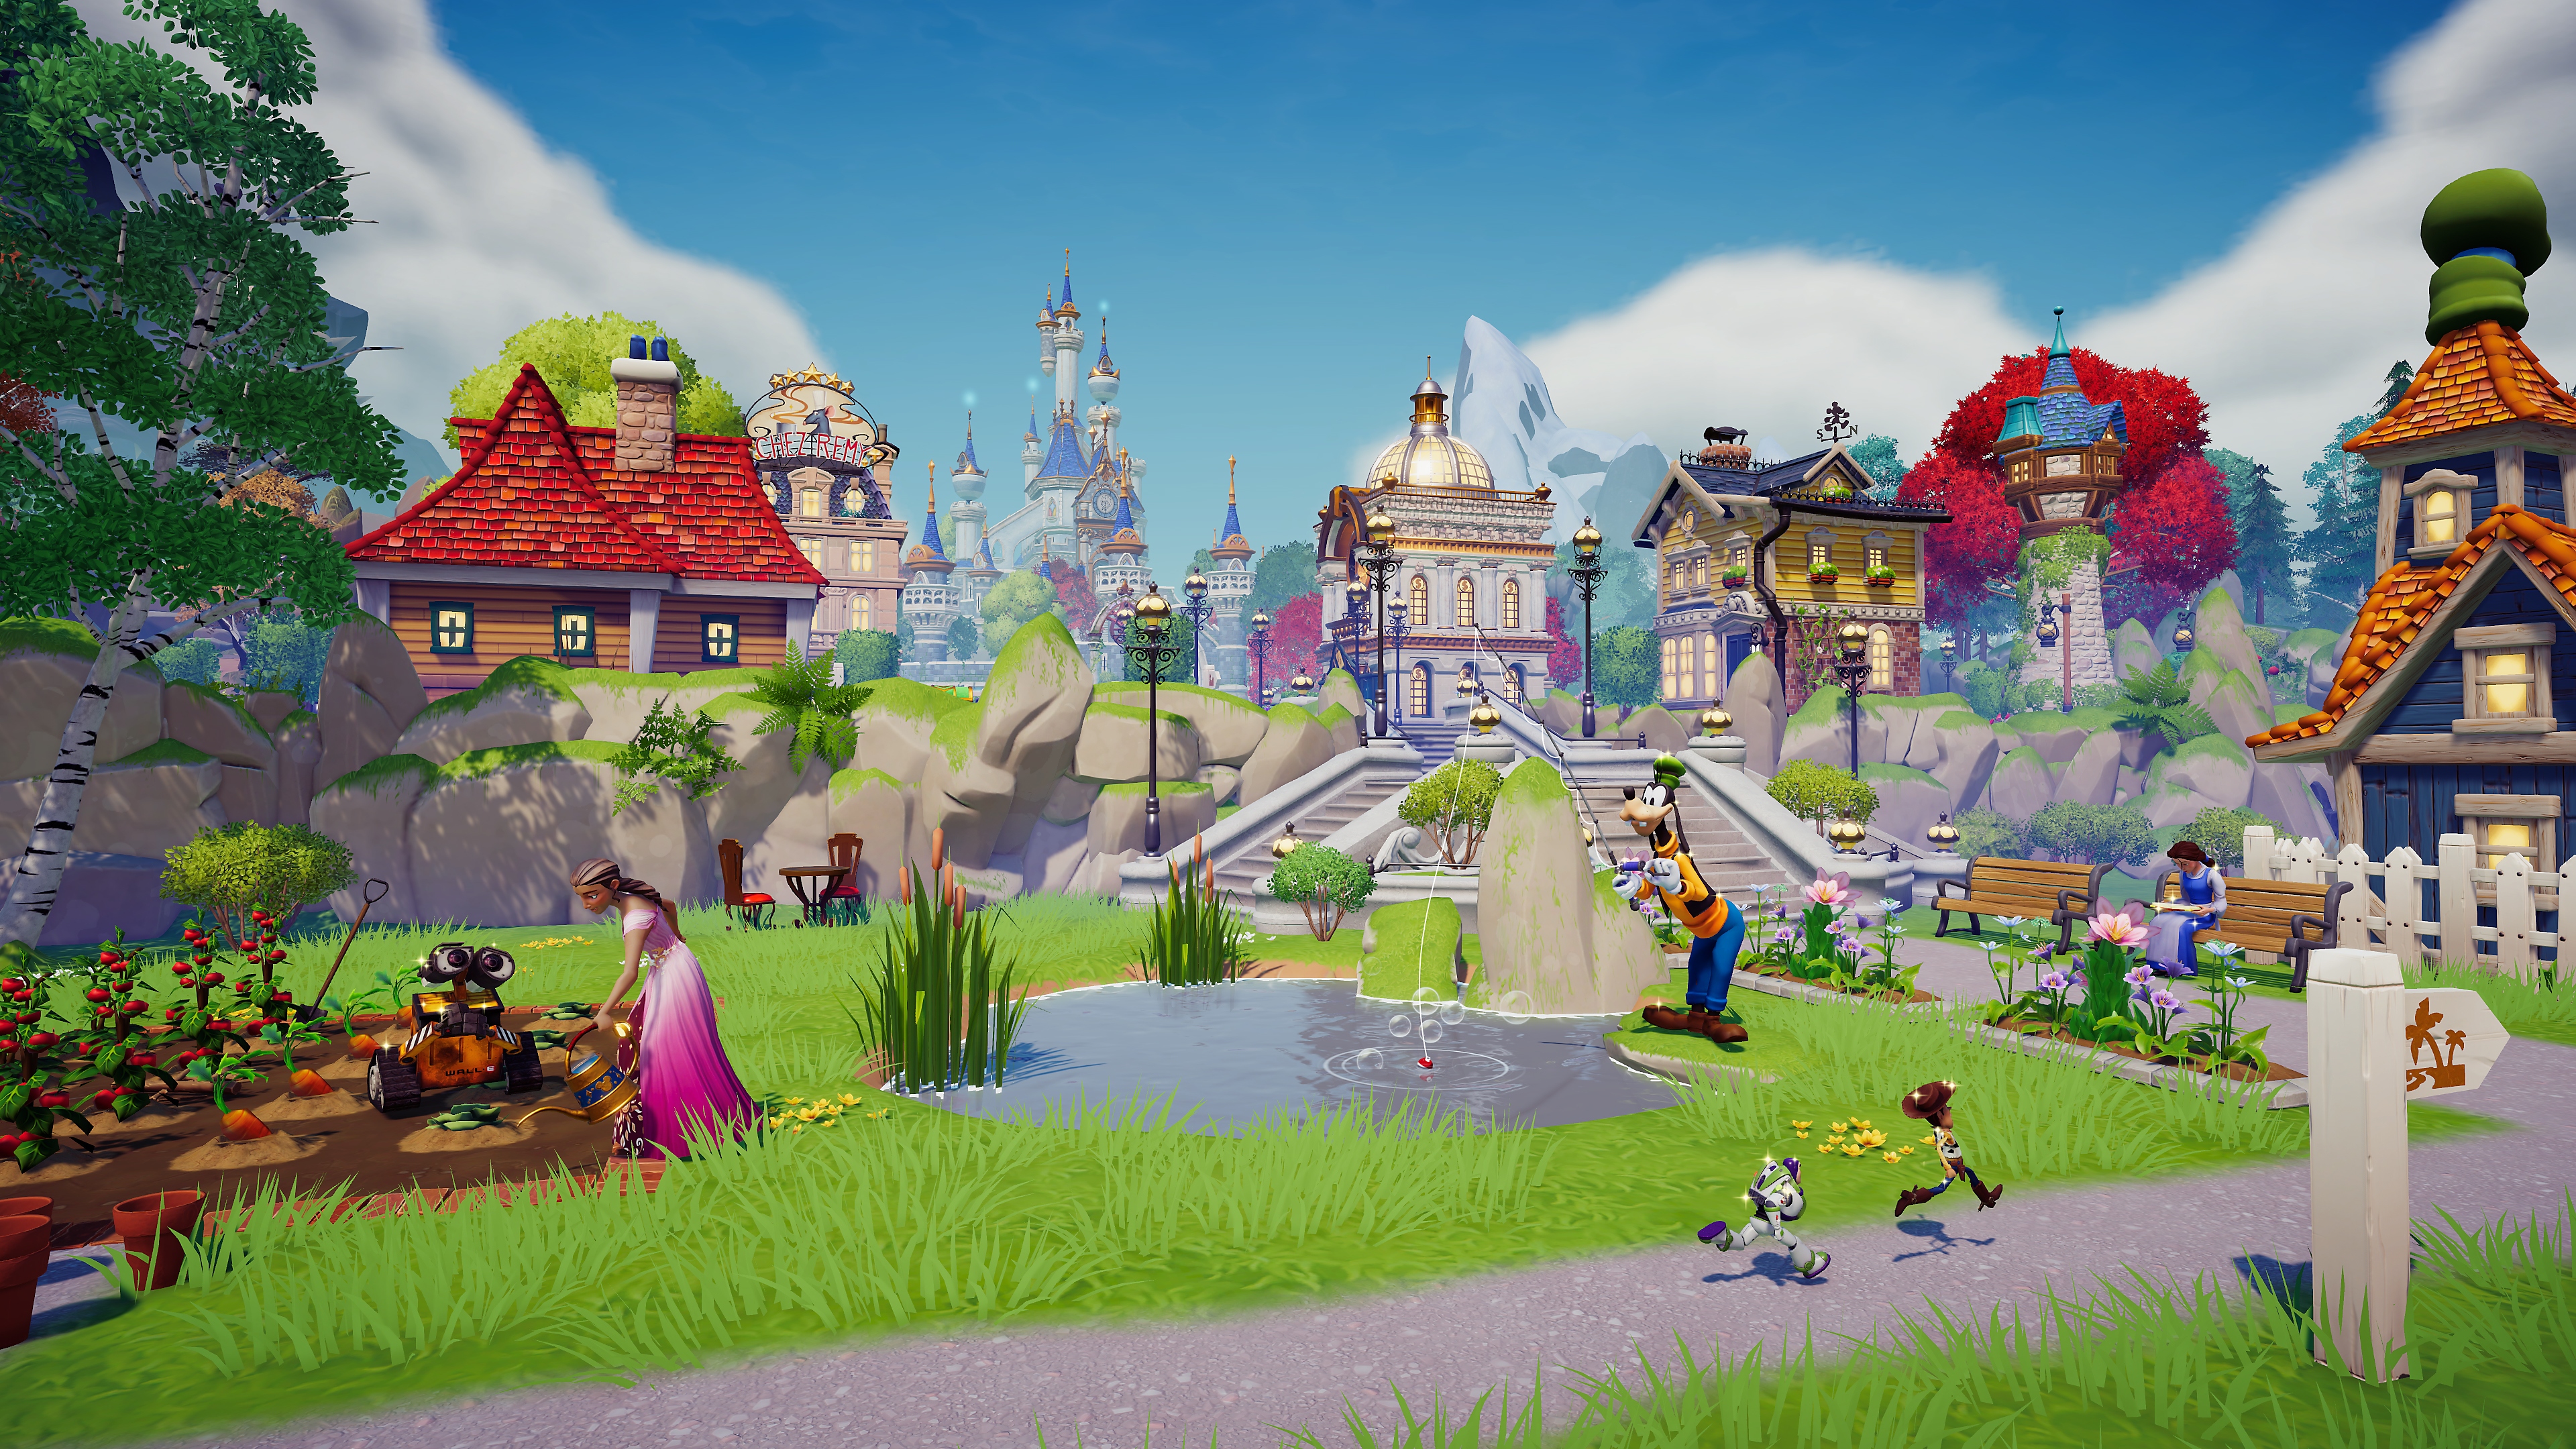 Captura de pantalla de Disney Dreamlight Valley que muestra la escena de una aldea